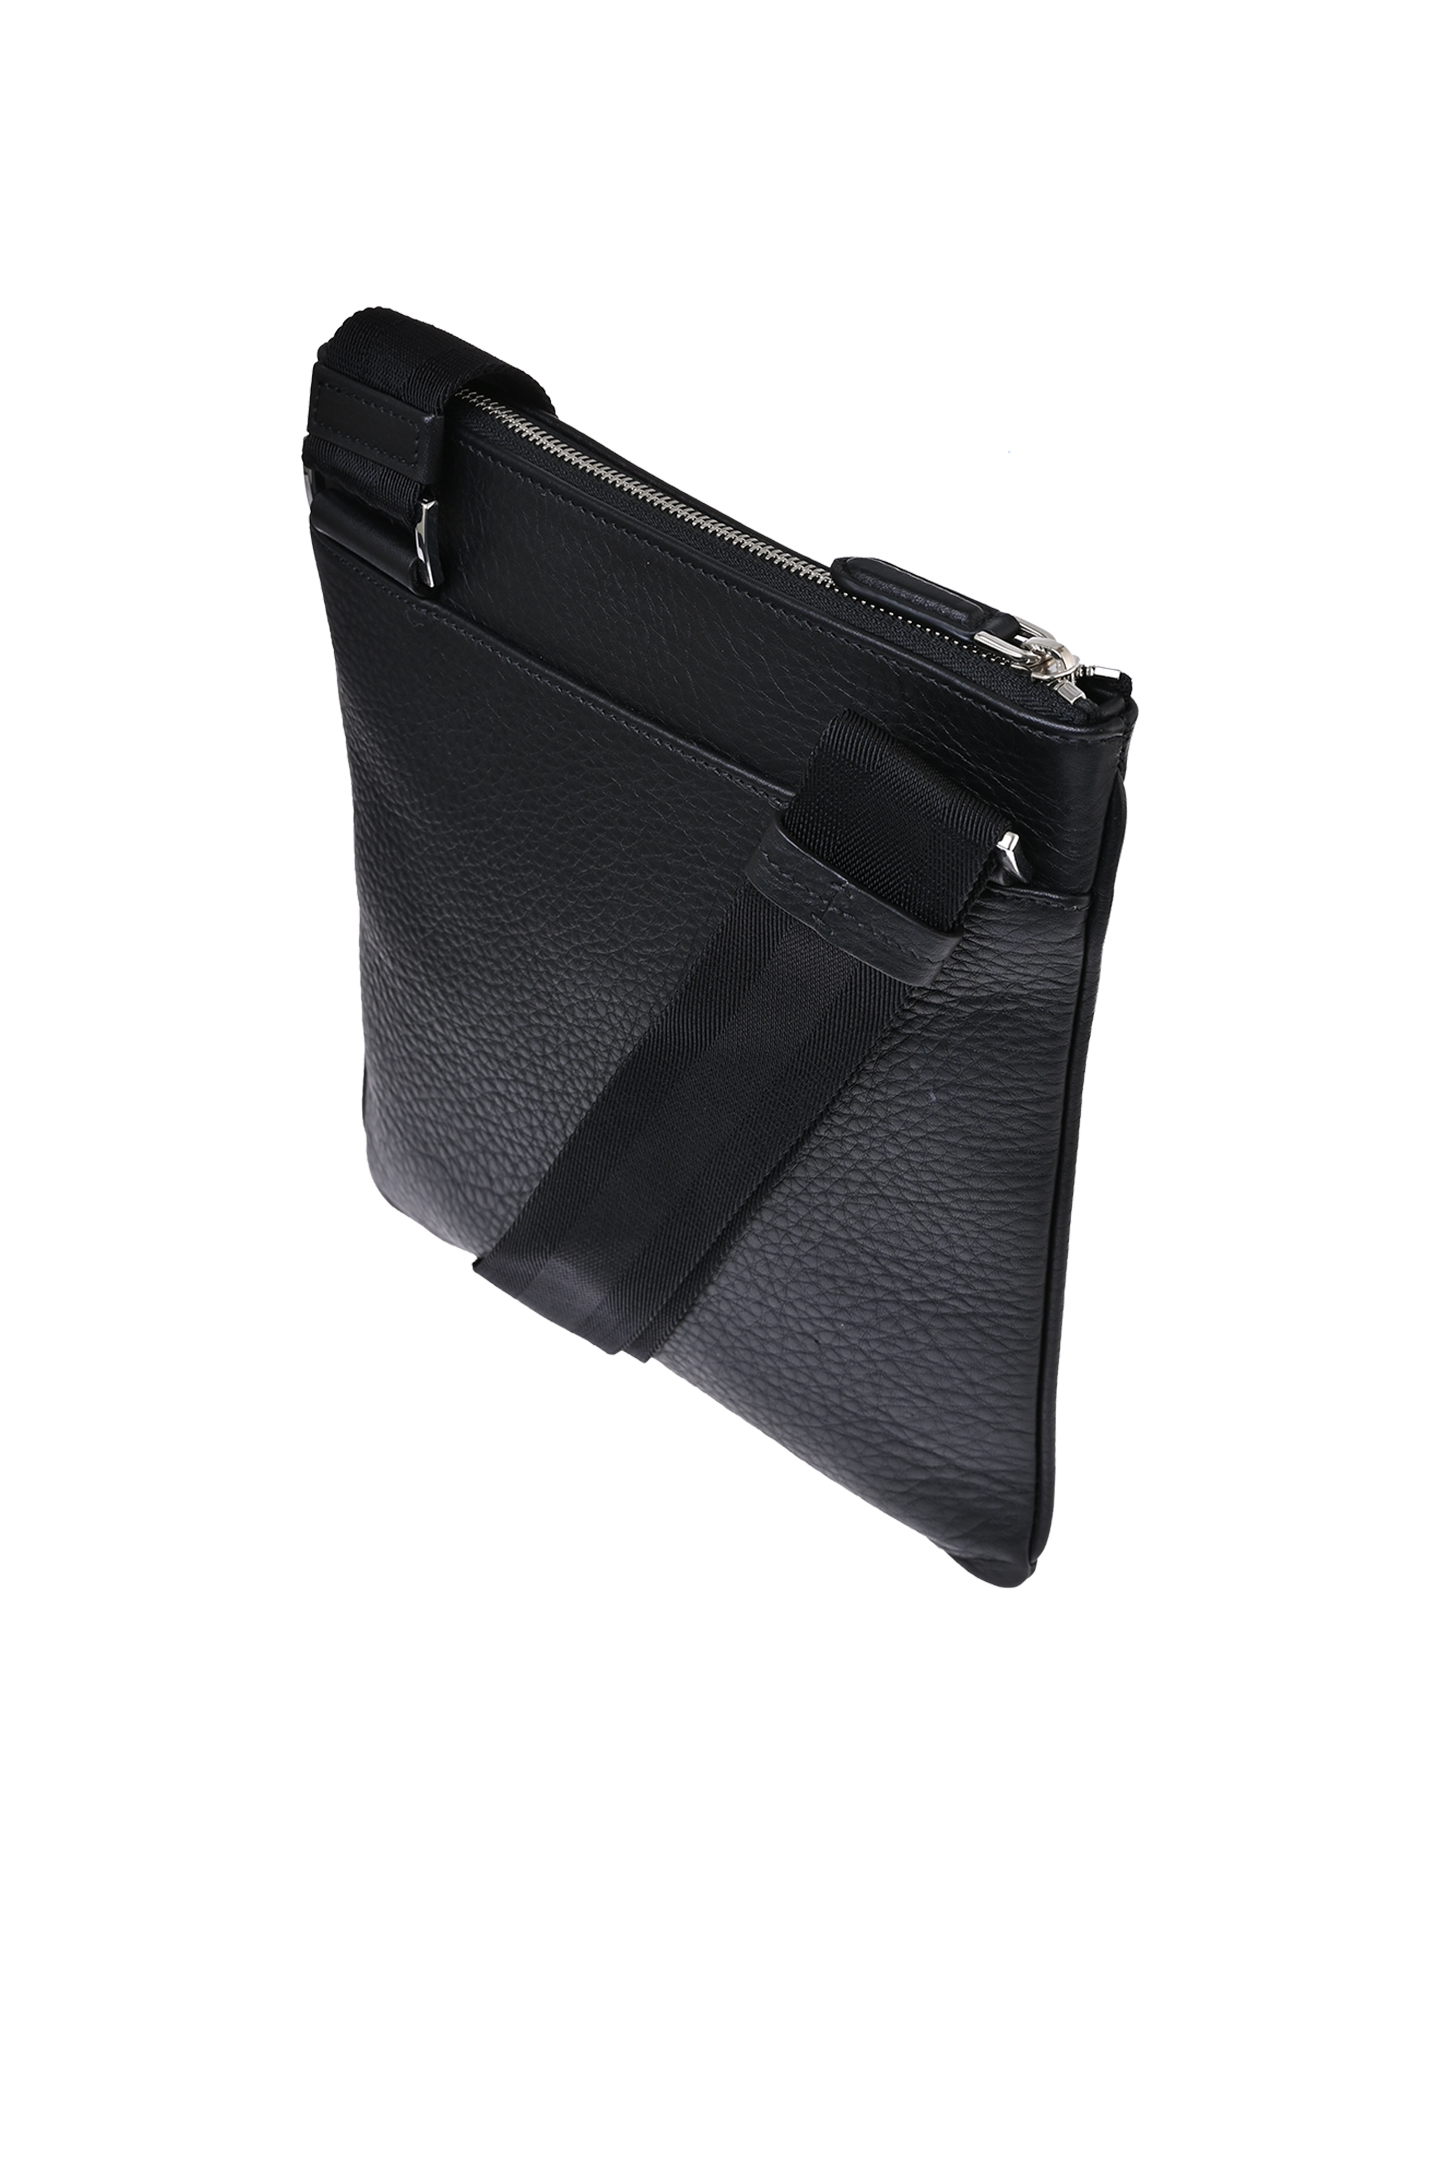 Кожаная сумка через плечо CANALI NA00134 P226101, цвет: Черный, Мужской